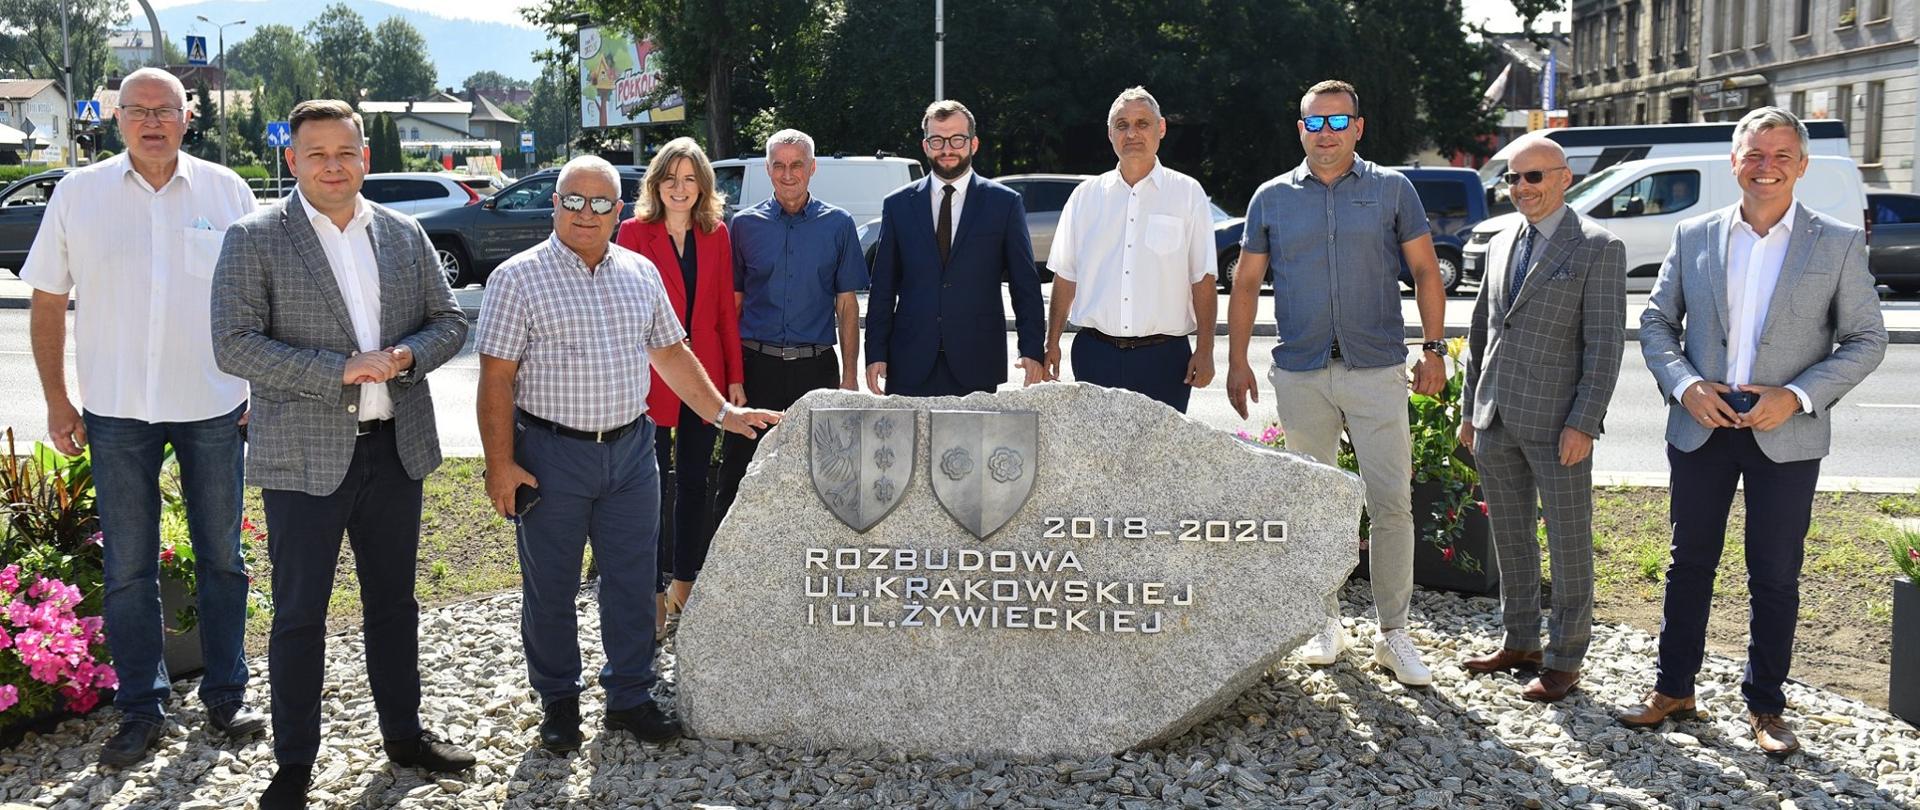 Na zdjęciu grupa osób wśród nich minister Puda, stoi przy kamieniu z napisem "2018-2020" Rozbudowa ul. Krakowskie i ul. Żywieckiej"